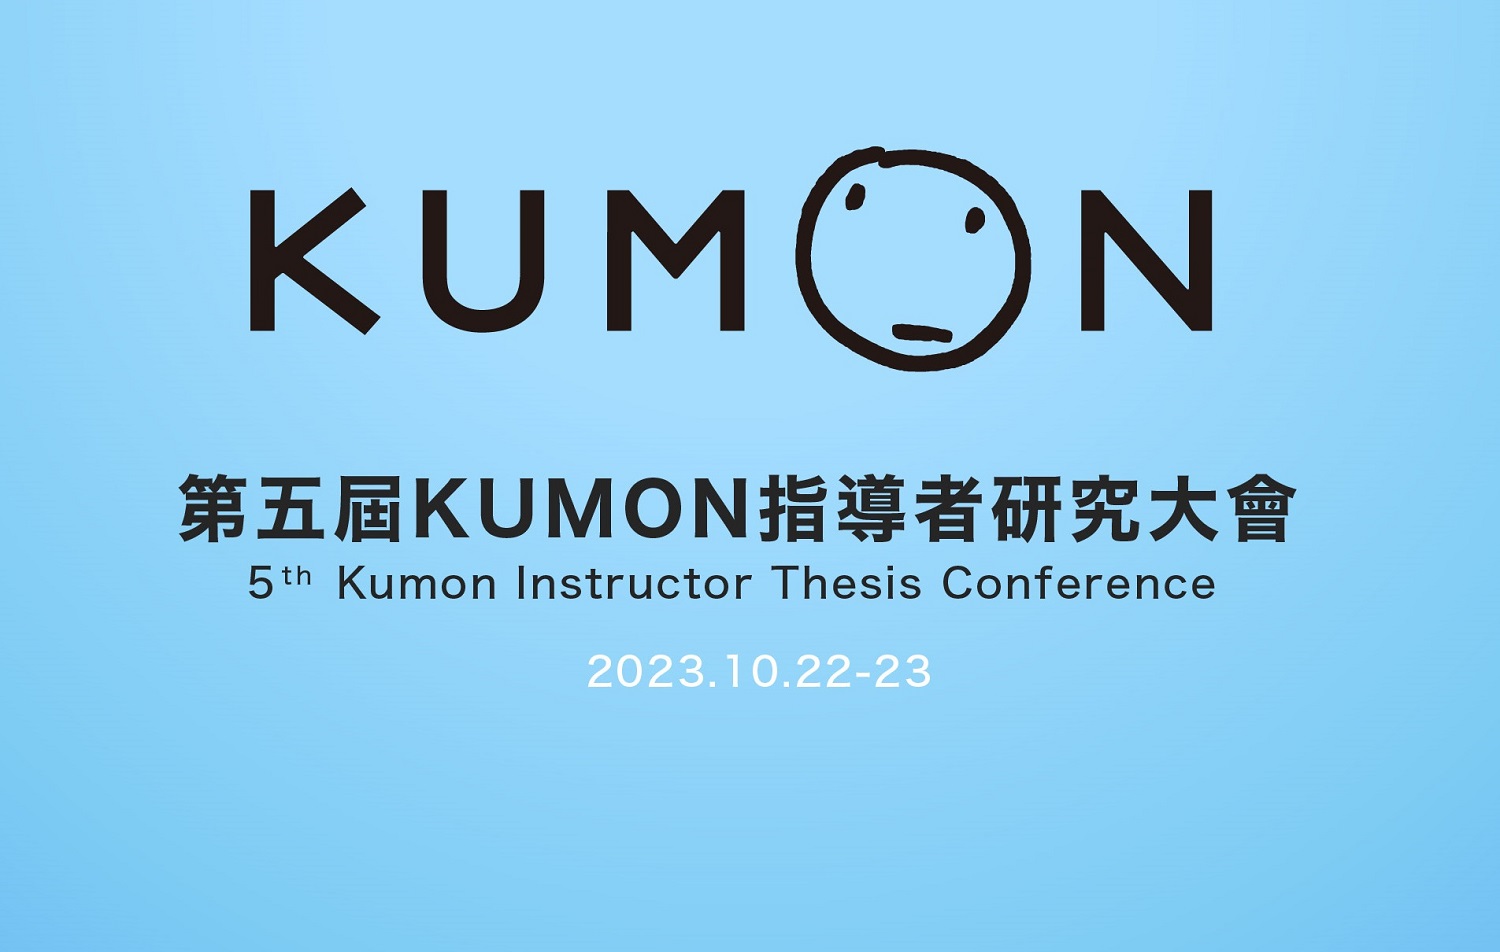 臺灣KUMON的年度盛會—— 第五屆KUMON指導者研究大會即將登場！